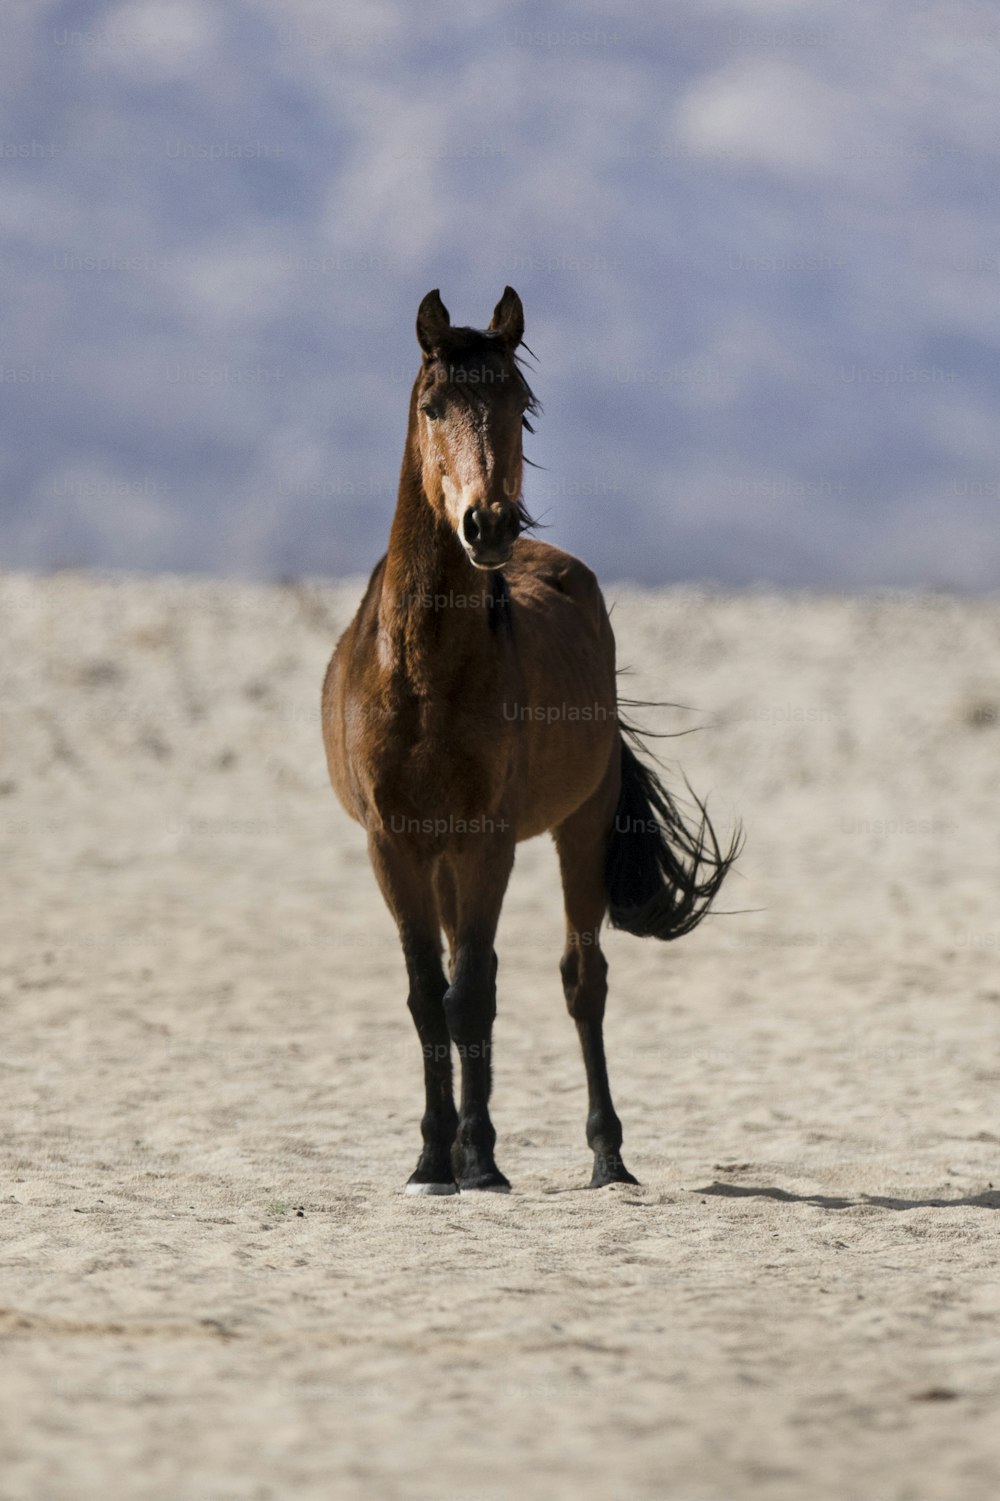 Wild Namibian desert horse.